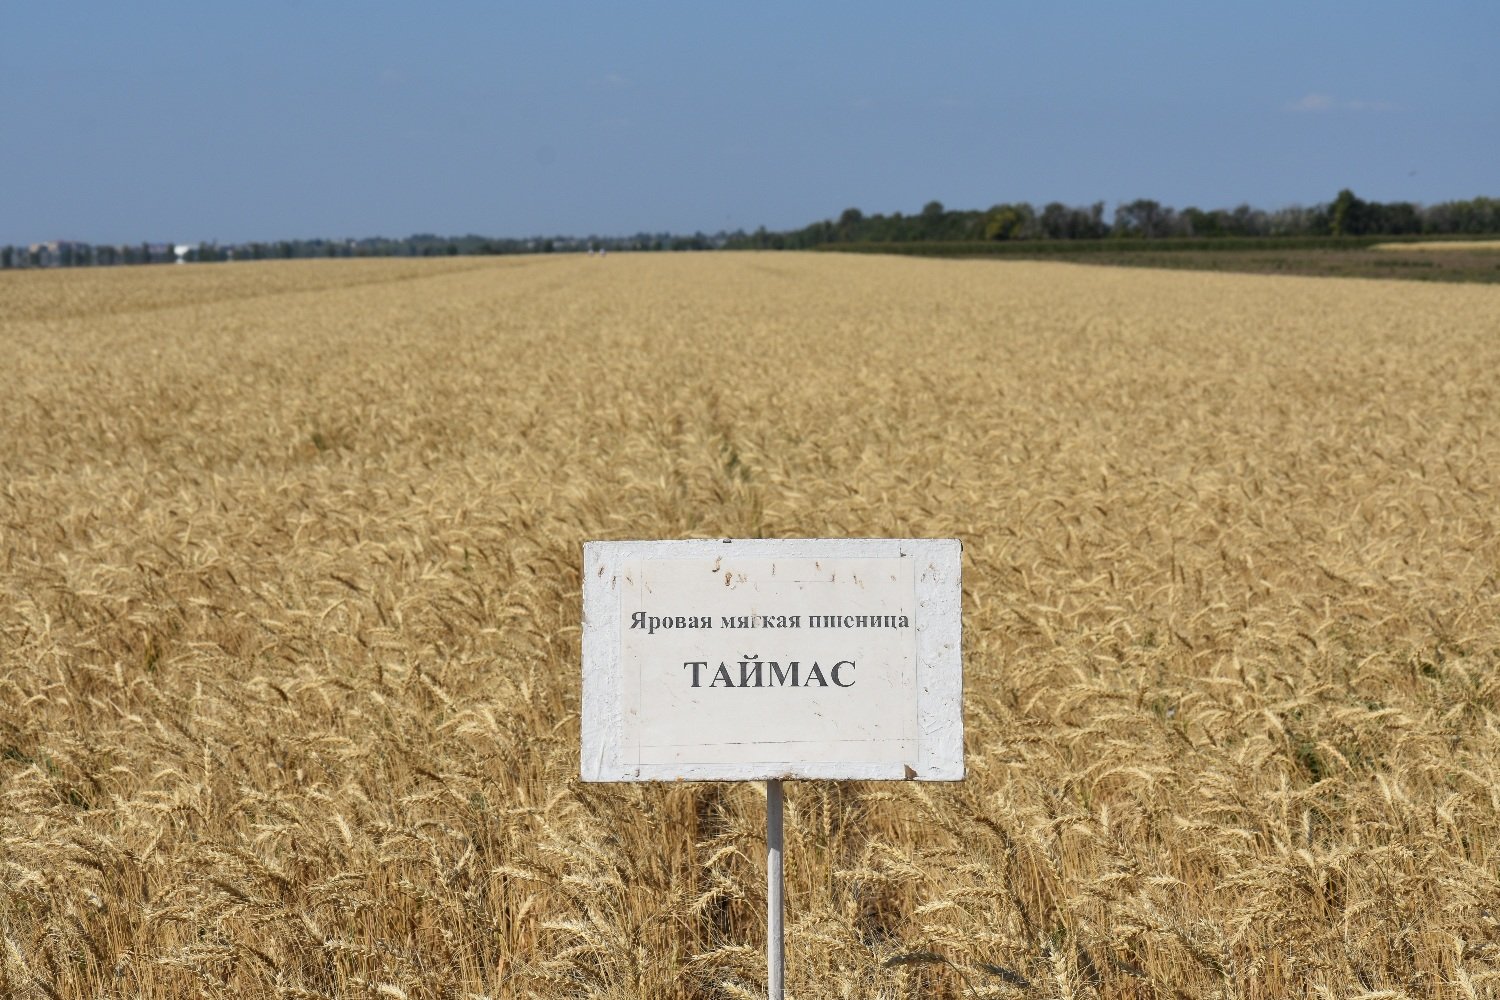 Новые казахстанские пшеница и чечевица получили патенты